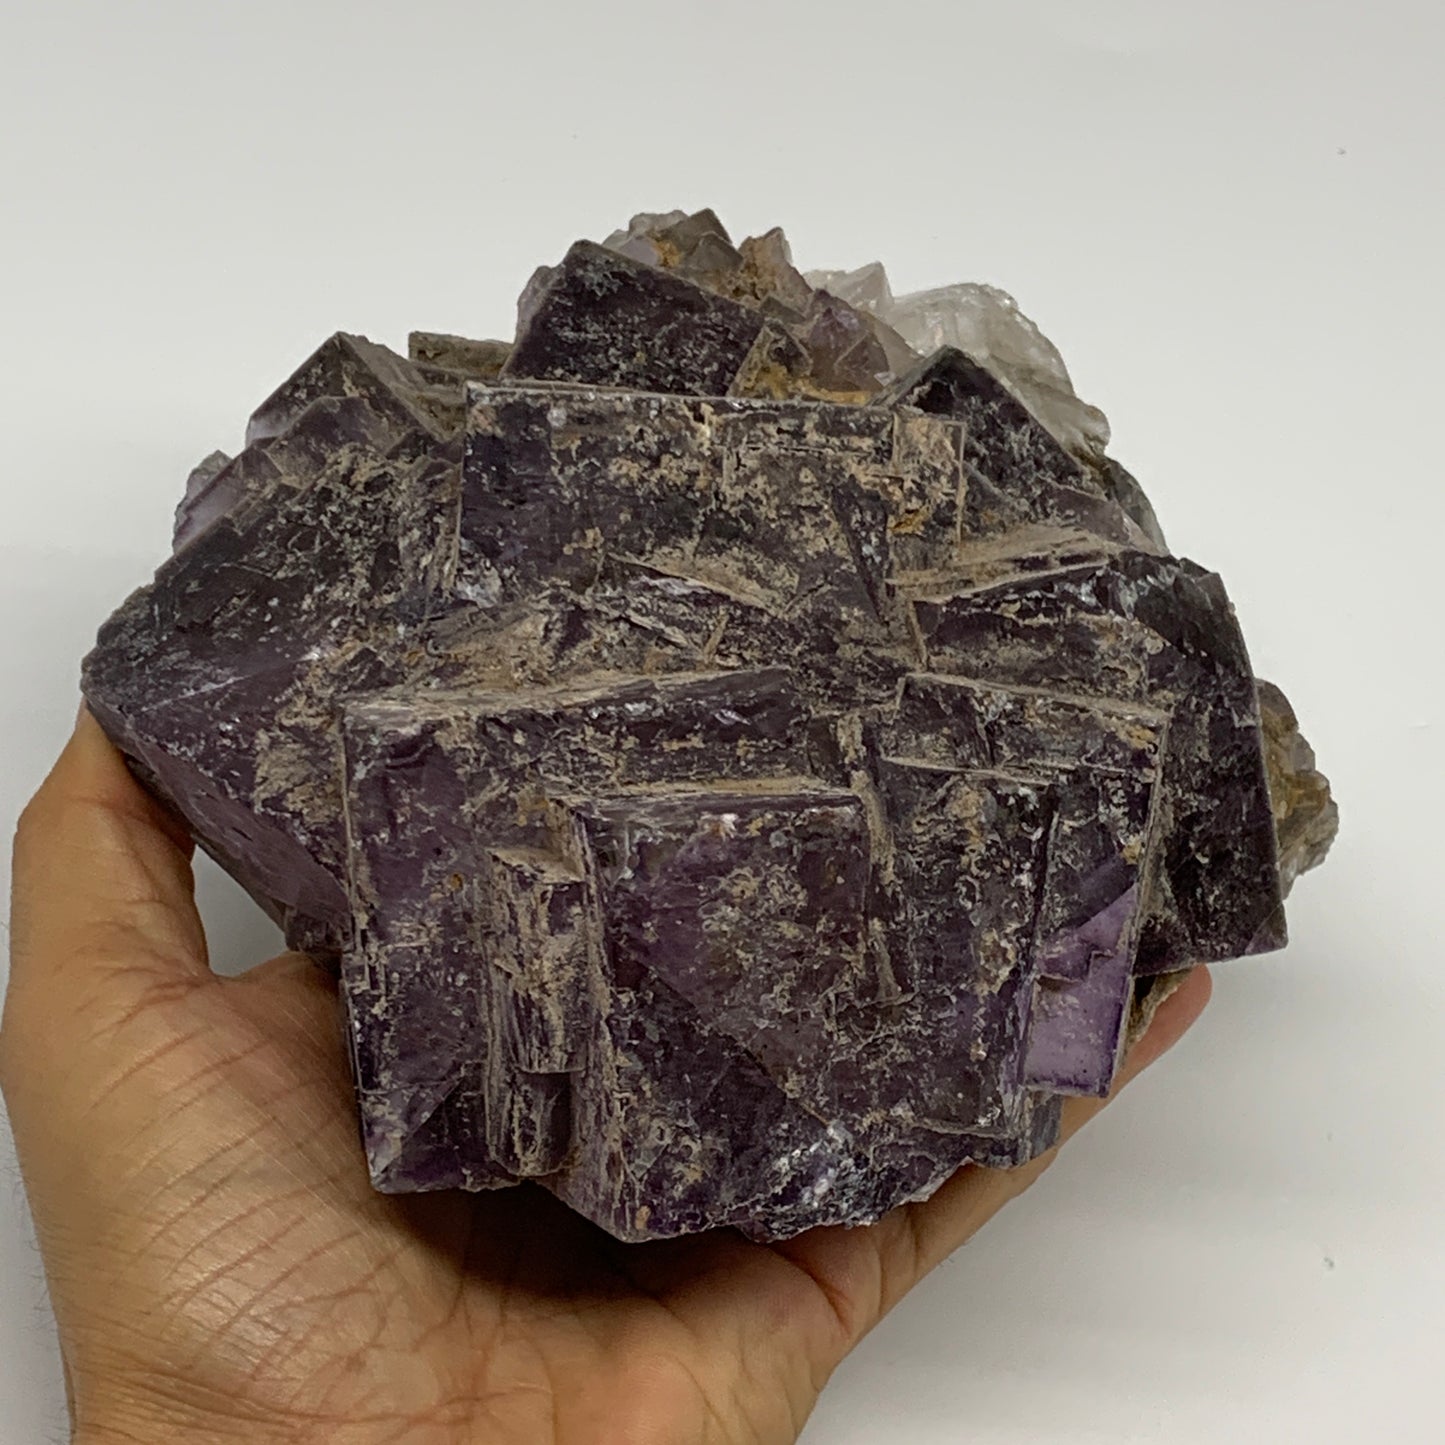 4.26 lbs, 6"x5.5"x3.2", Purple Fluorite Crystal Mineral Specimens @Pakistan, B27